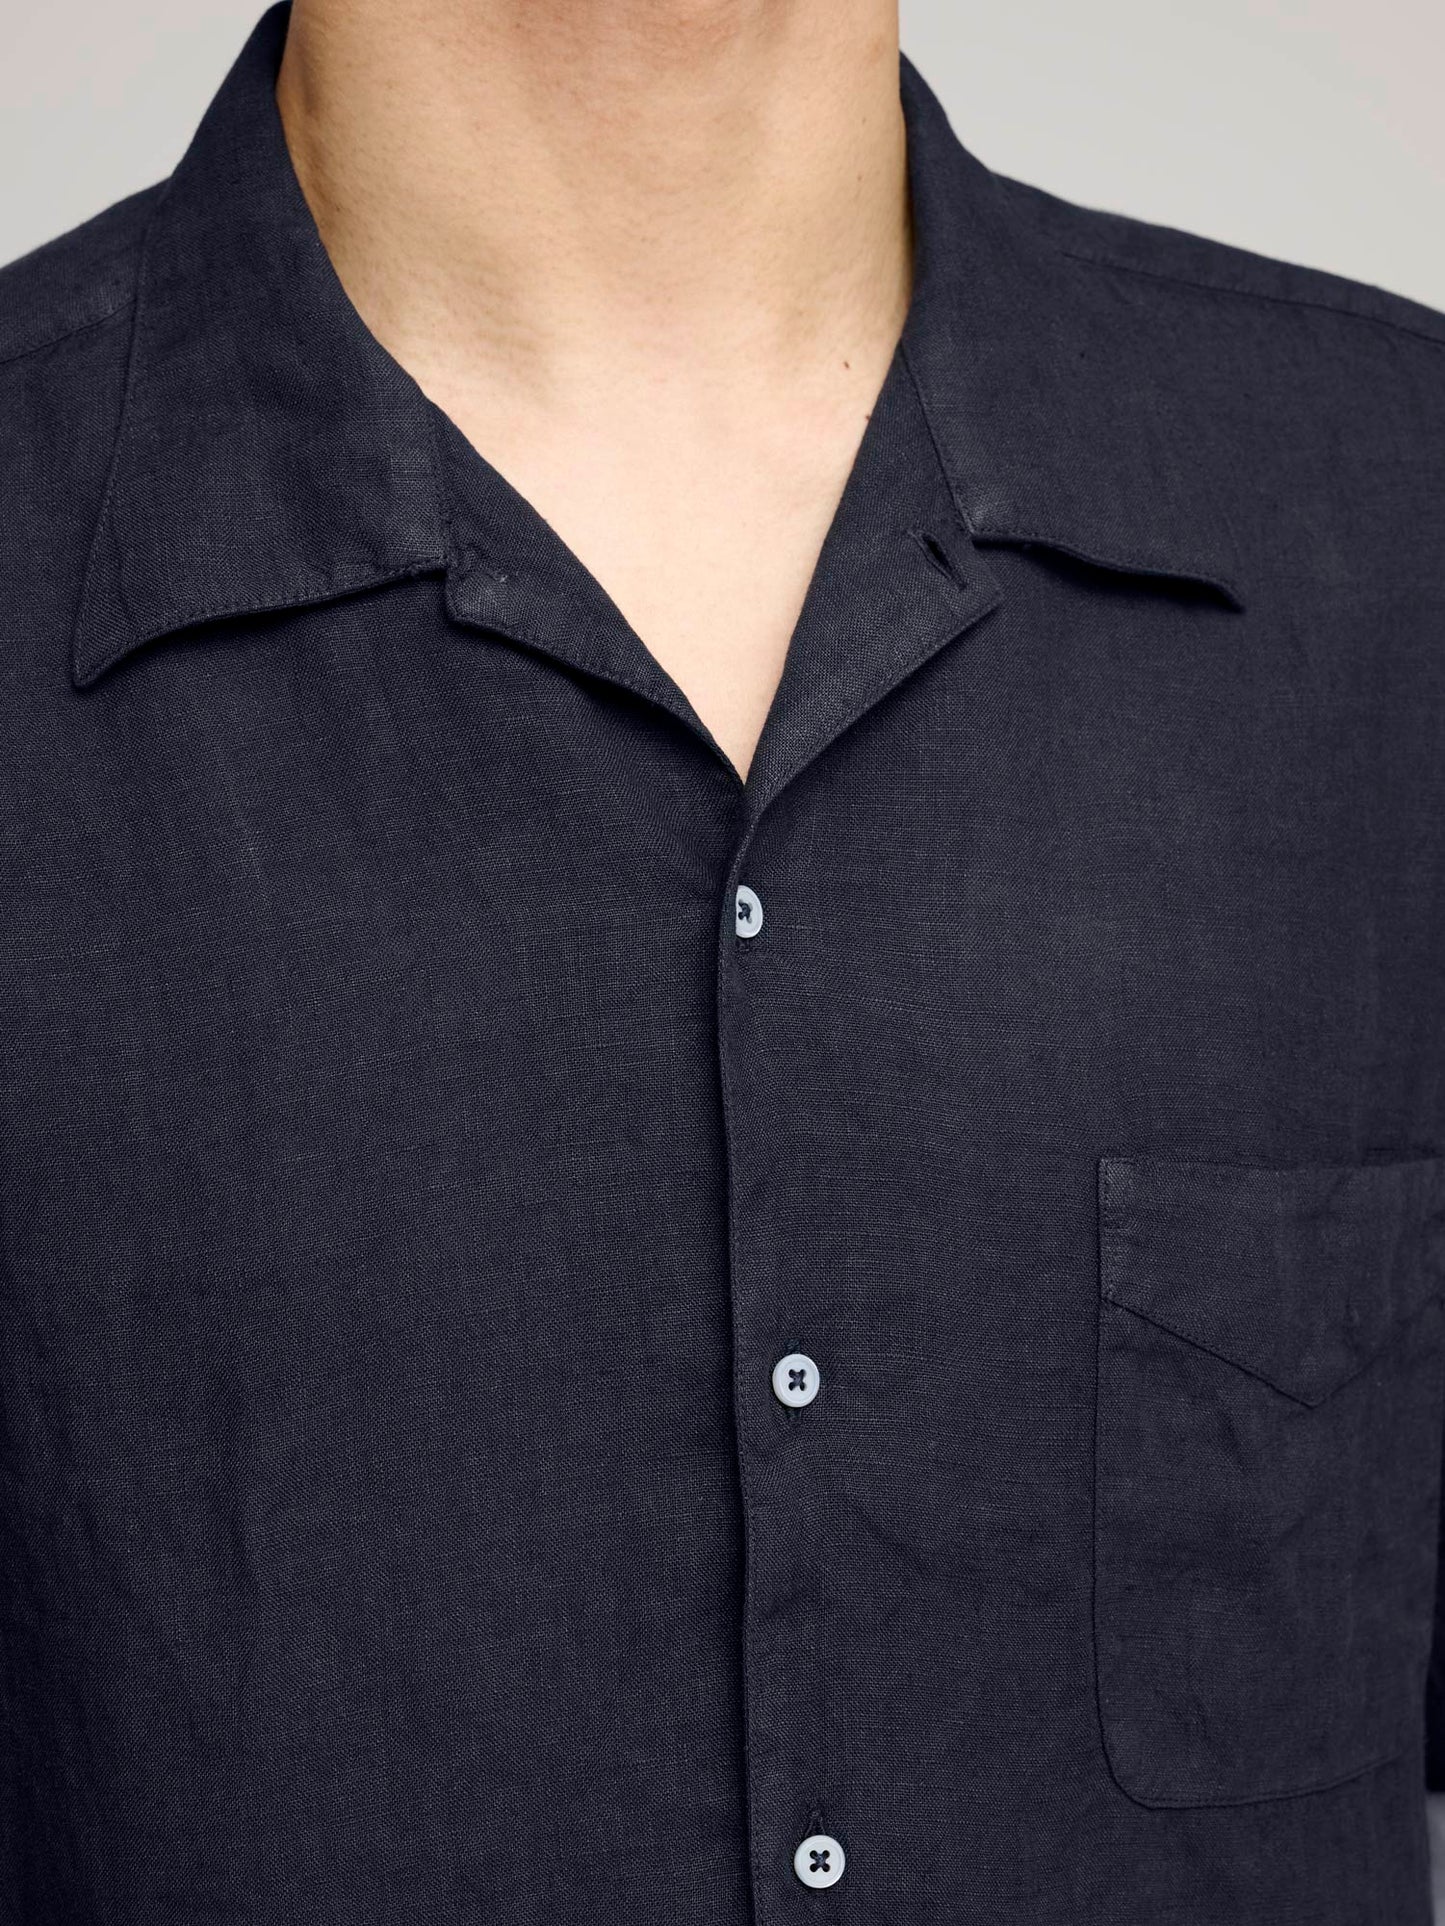 Venice Cuban Collar Short Sleeve Linen Shirt, Navy Blue